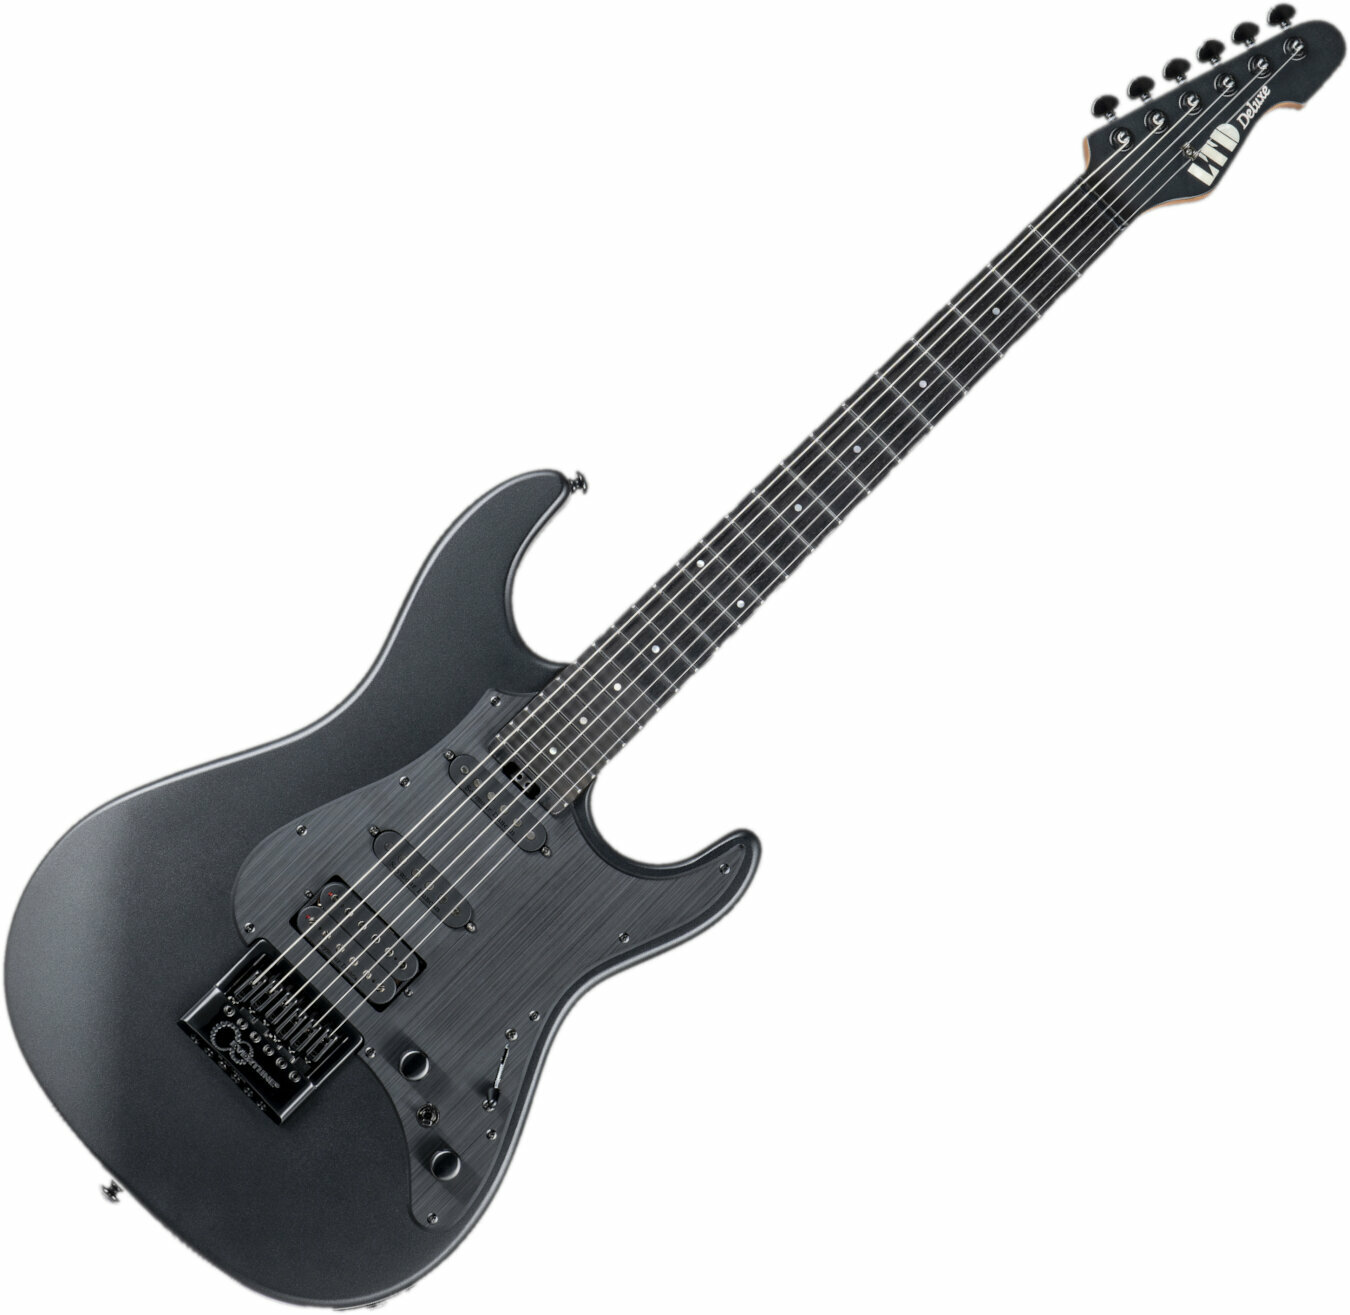 Guitare électrique ESP LTD SN-1000 Evertune Charcoal Metallic Satin (Déjà utilisé)